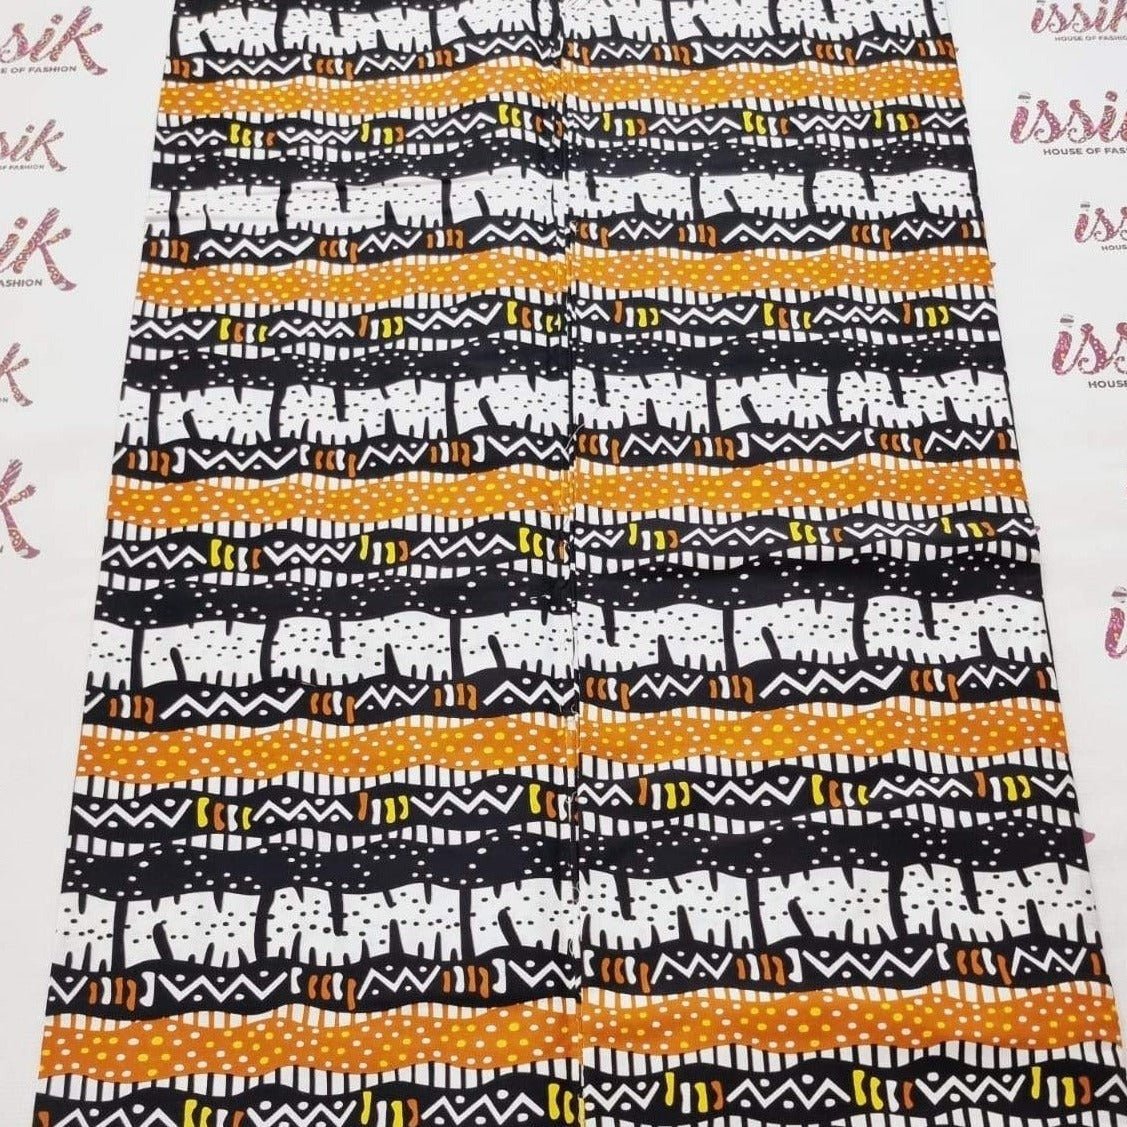 White, Black & Yellow Tribal Print Ankara - ak15073 - House of Prints